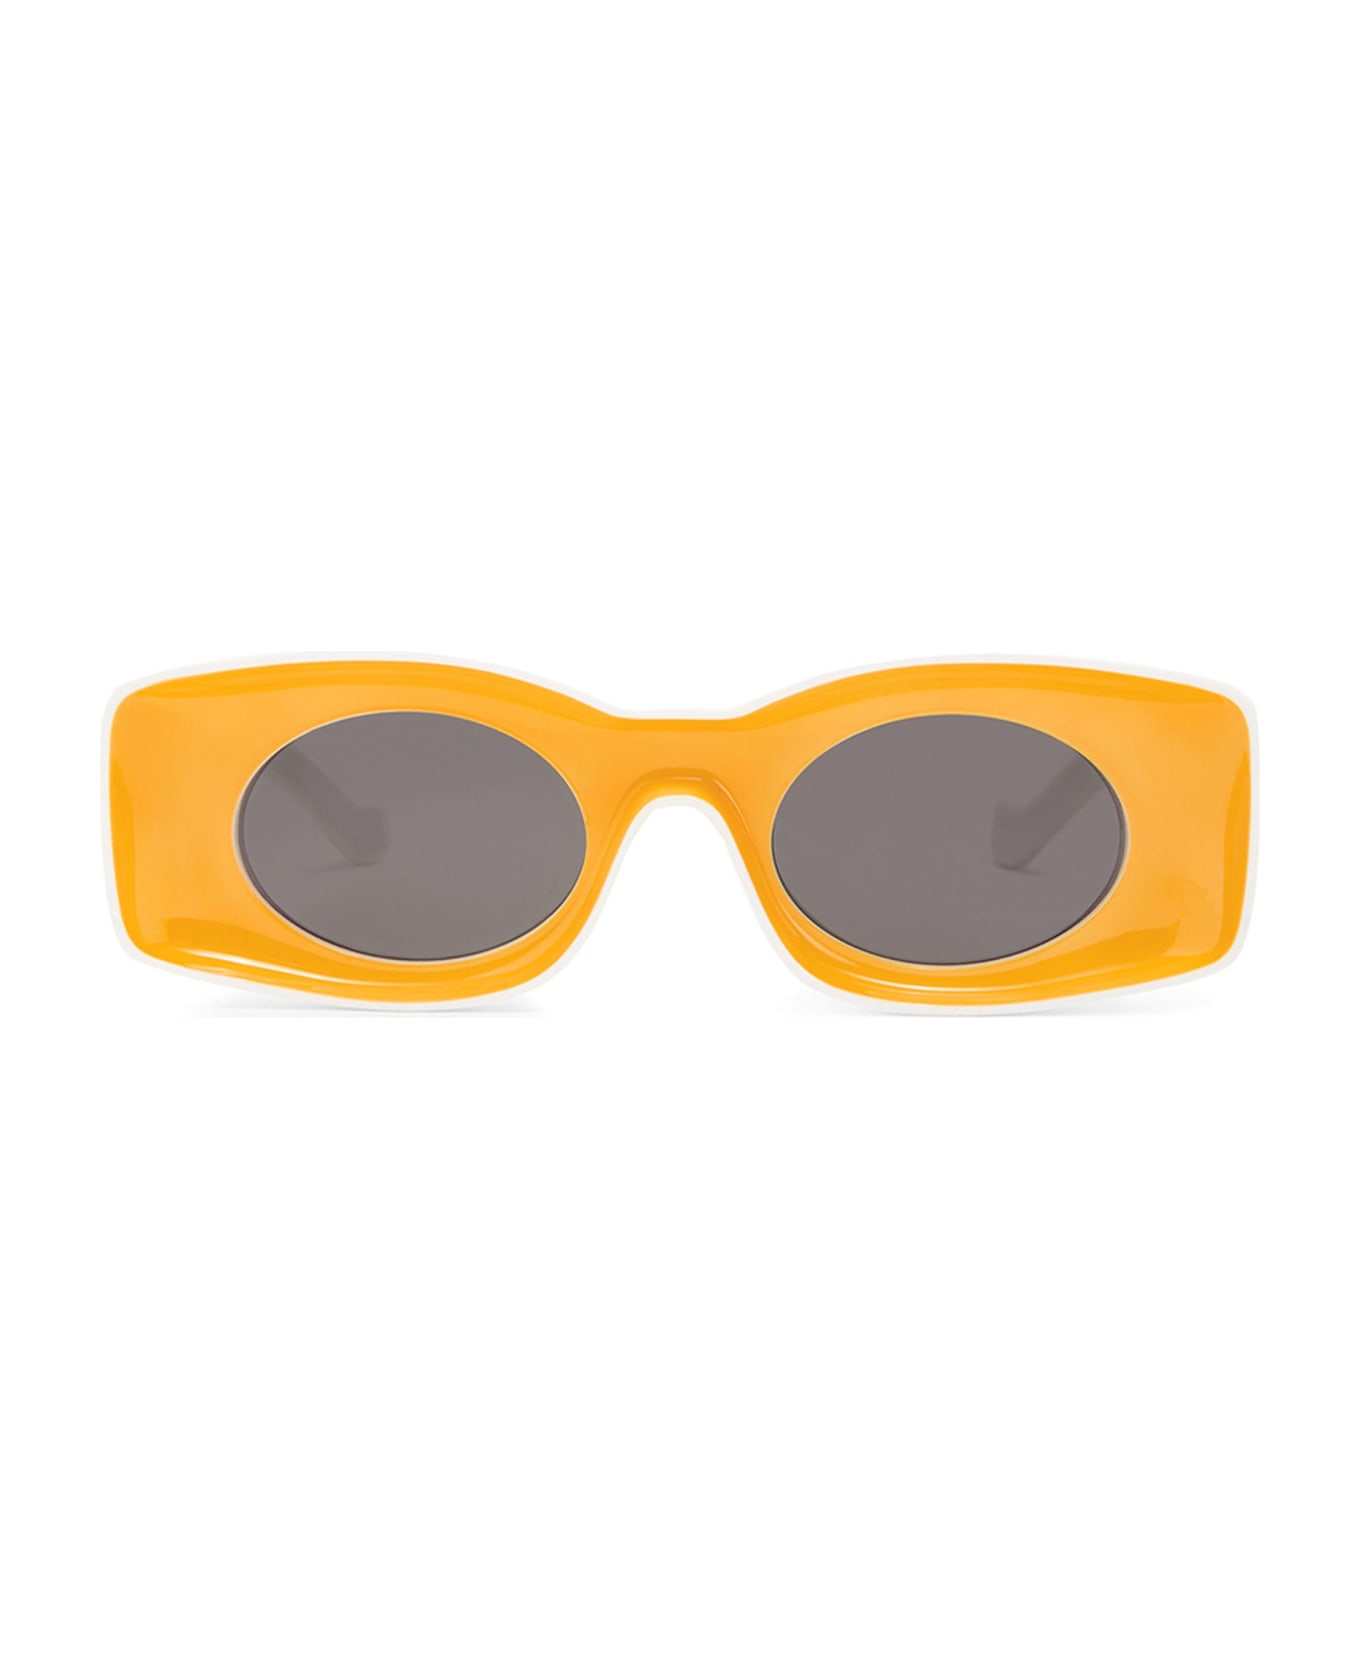 Loewe Lw40033i - Yellow / White Sunglasses - yellow